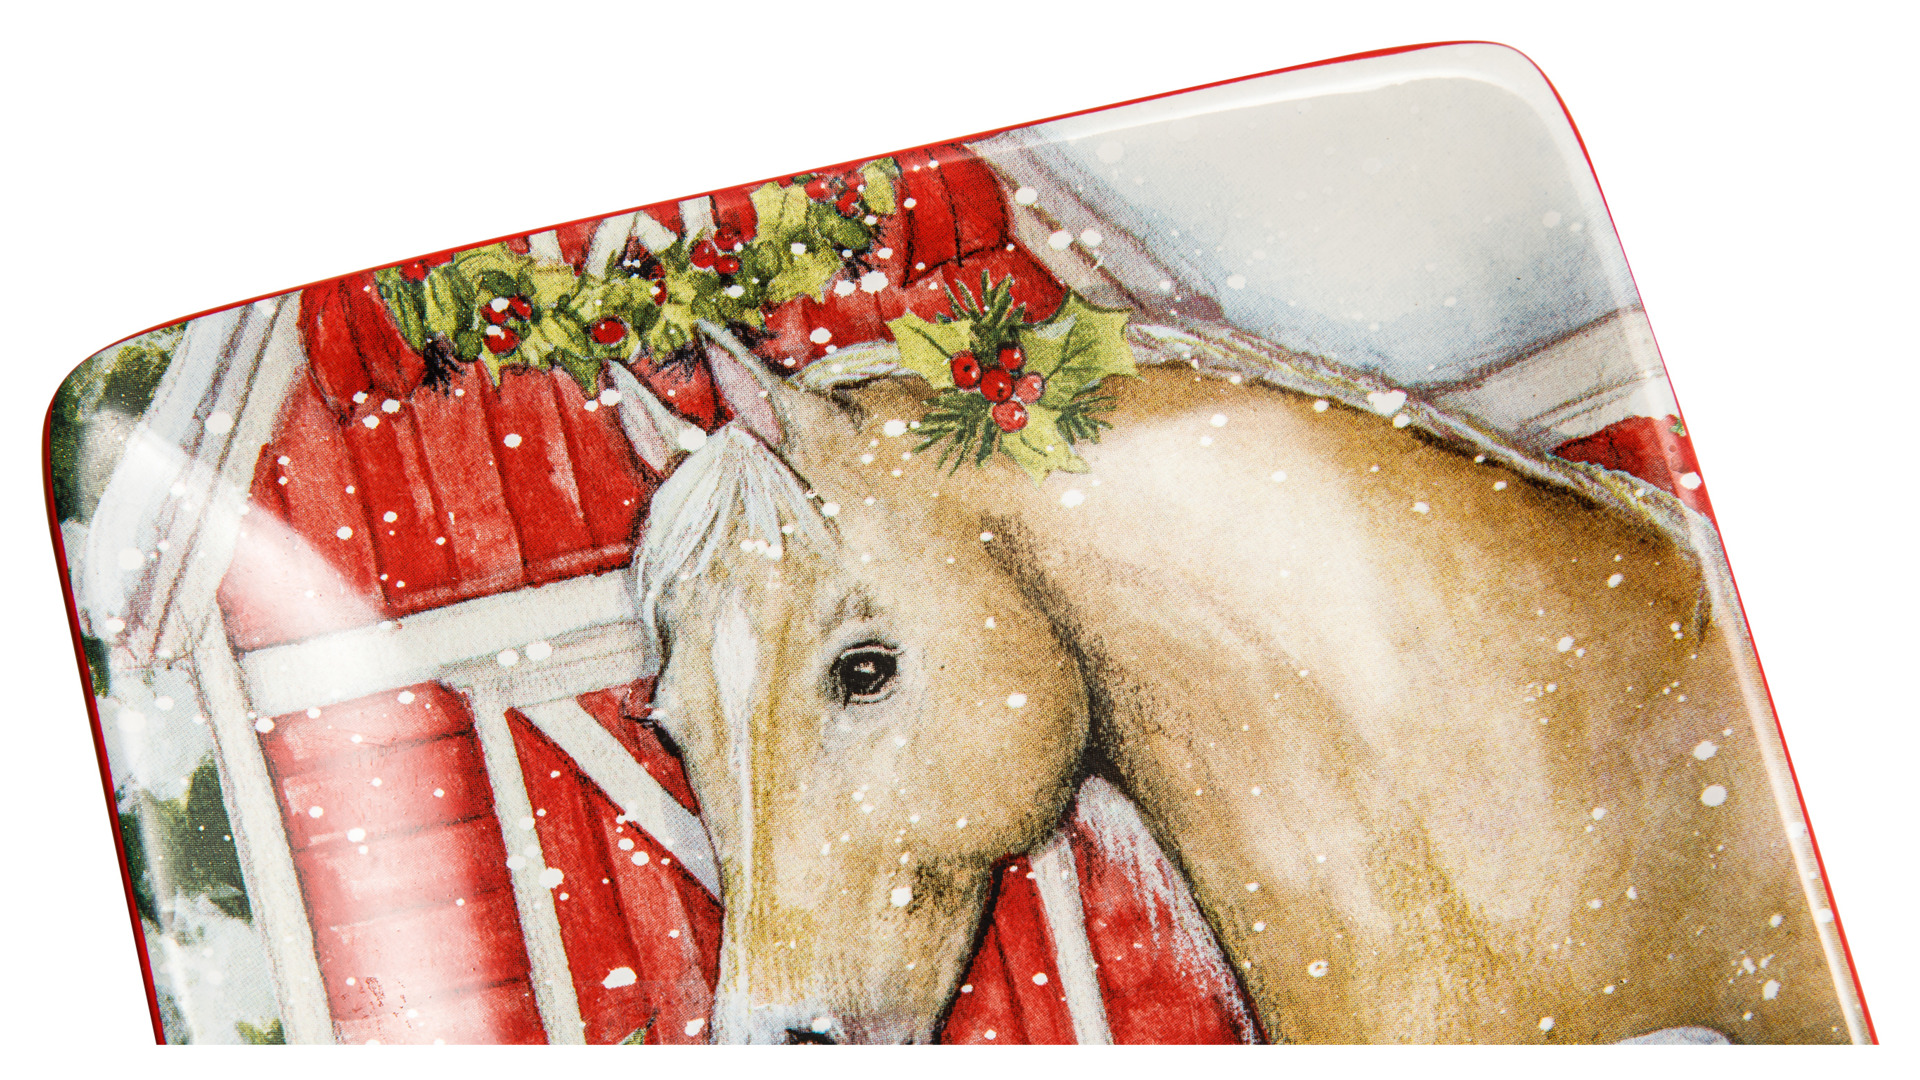 Тарелка пирожковая Certified Int. Рождество в усадьбе.Лошадь каурая 15 см, керамика